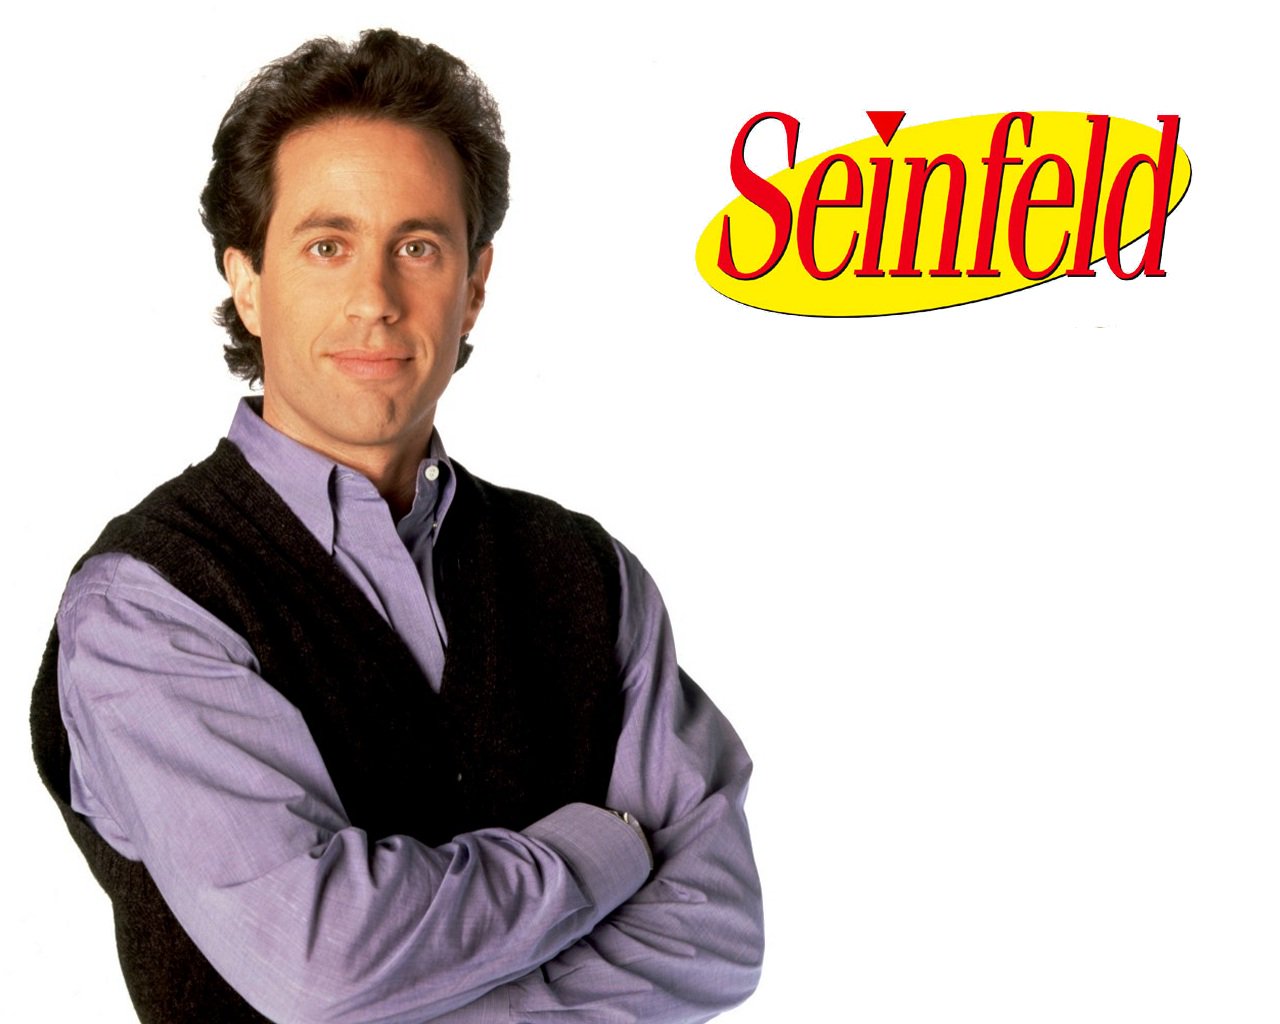 Jerry Seinfeld bugün 63 ya  nda! Nice uzun y llara!
Happy birthday 